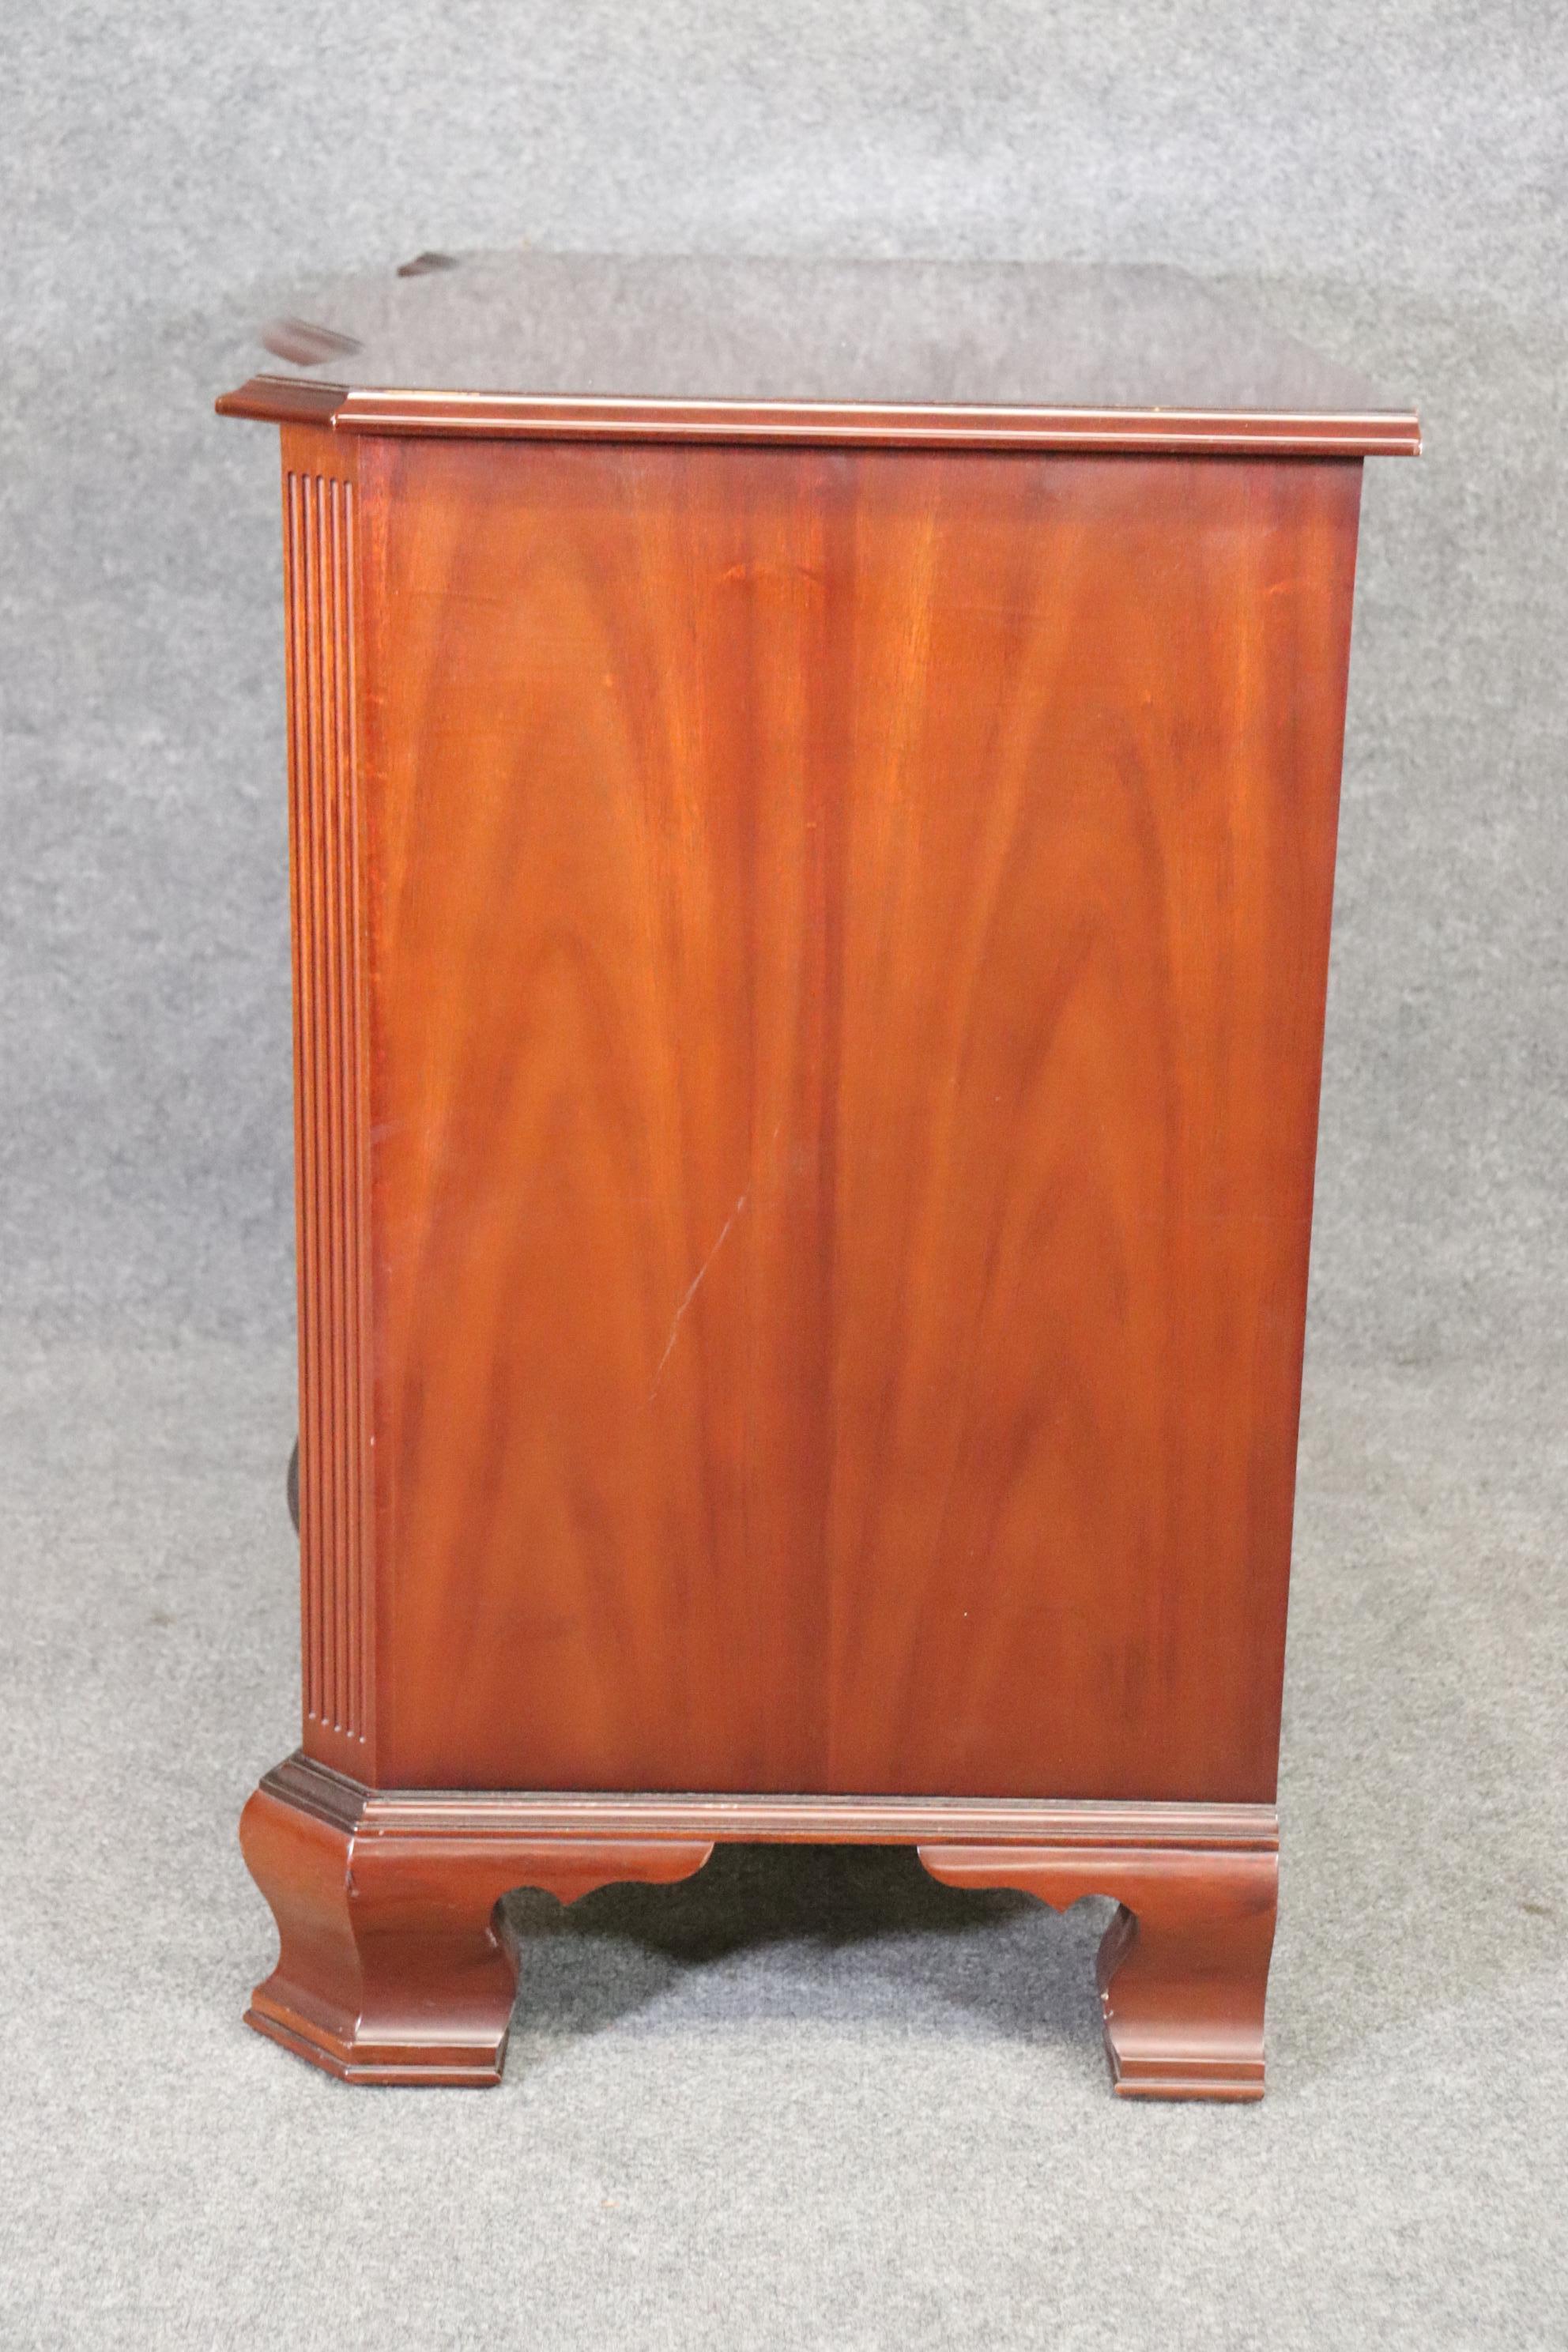 Chippendale Vintage Kindel Mahogany 4 Drawer Dresser Chest of Drawers Antique Dresser